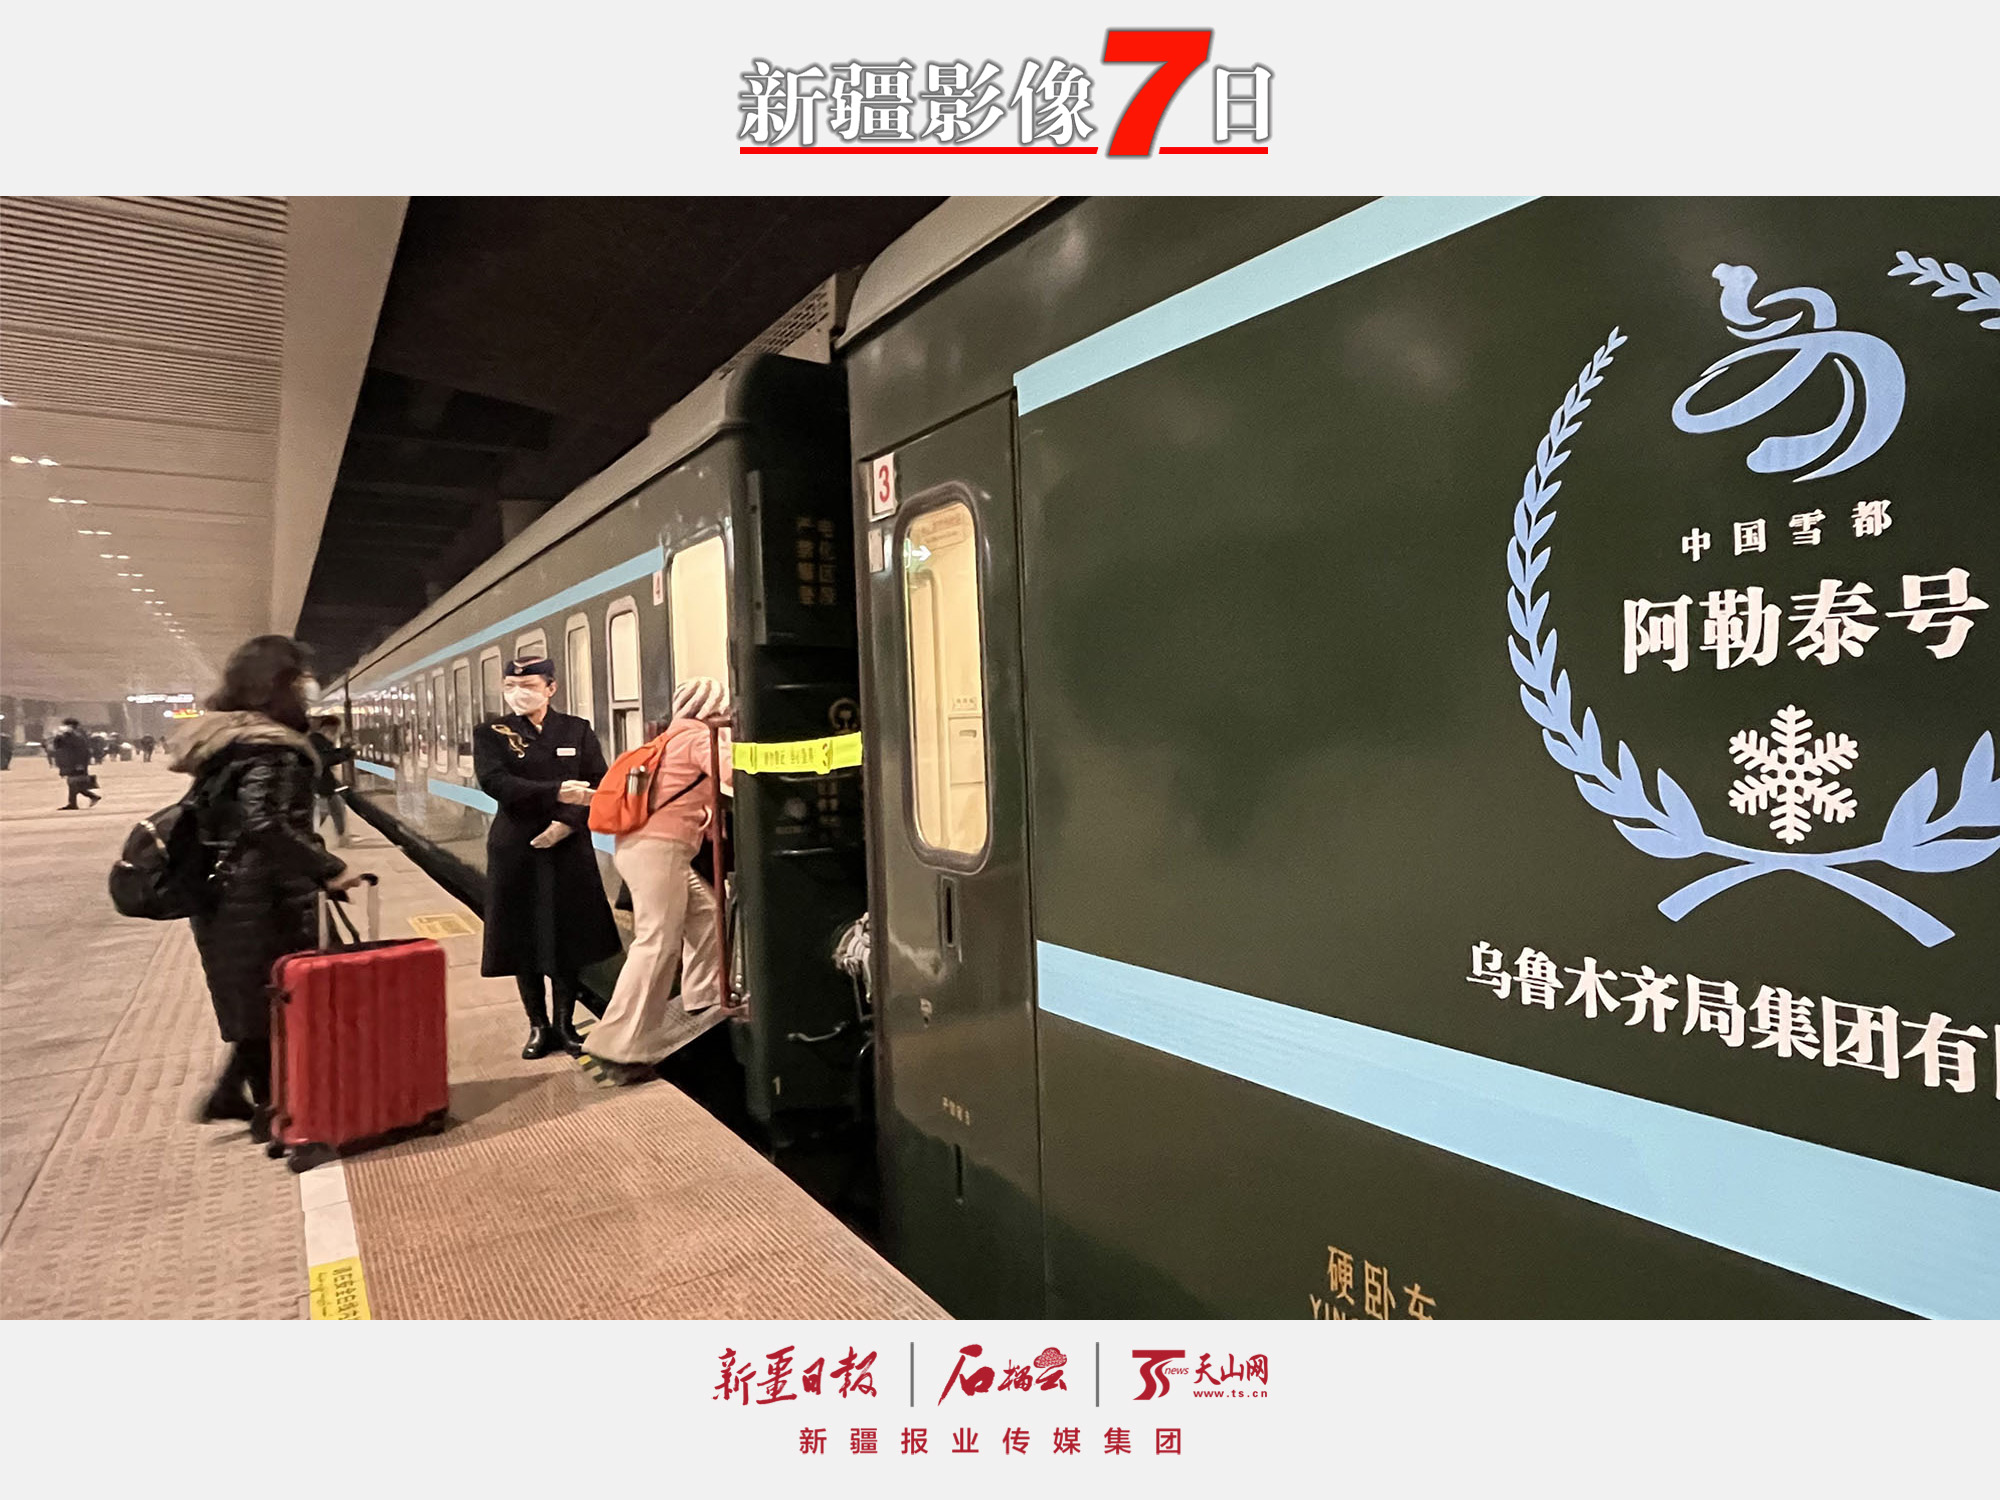 2022年12月28日，游客在乌鲁木齐站准备乘坐“中国雪都·阿勒泰号”高品质旅游专列前往阿勒泰。随着新疆冬季旅游全面启动，新疆铁路部门于28日起开行乌鲁木齐至阿勒泰“中国雪都·阿勒泰号”高品质旅游列车。28日23时20分，该列车从乌鲁木齐站发车，29日9时到达阿勒泰站。石榴云/新疆日报记者约提克尔·尼加提摄